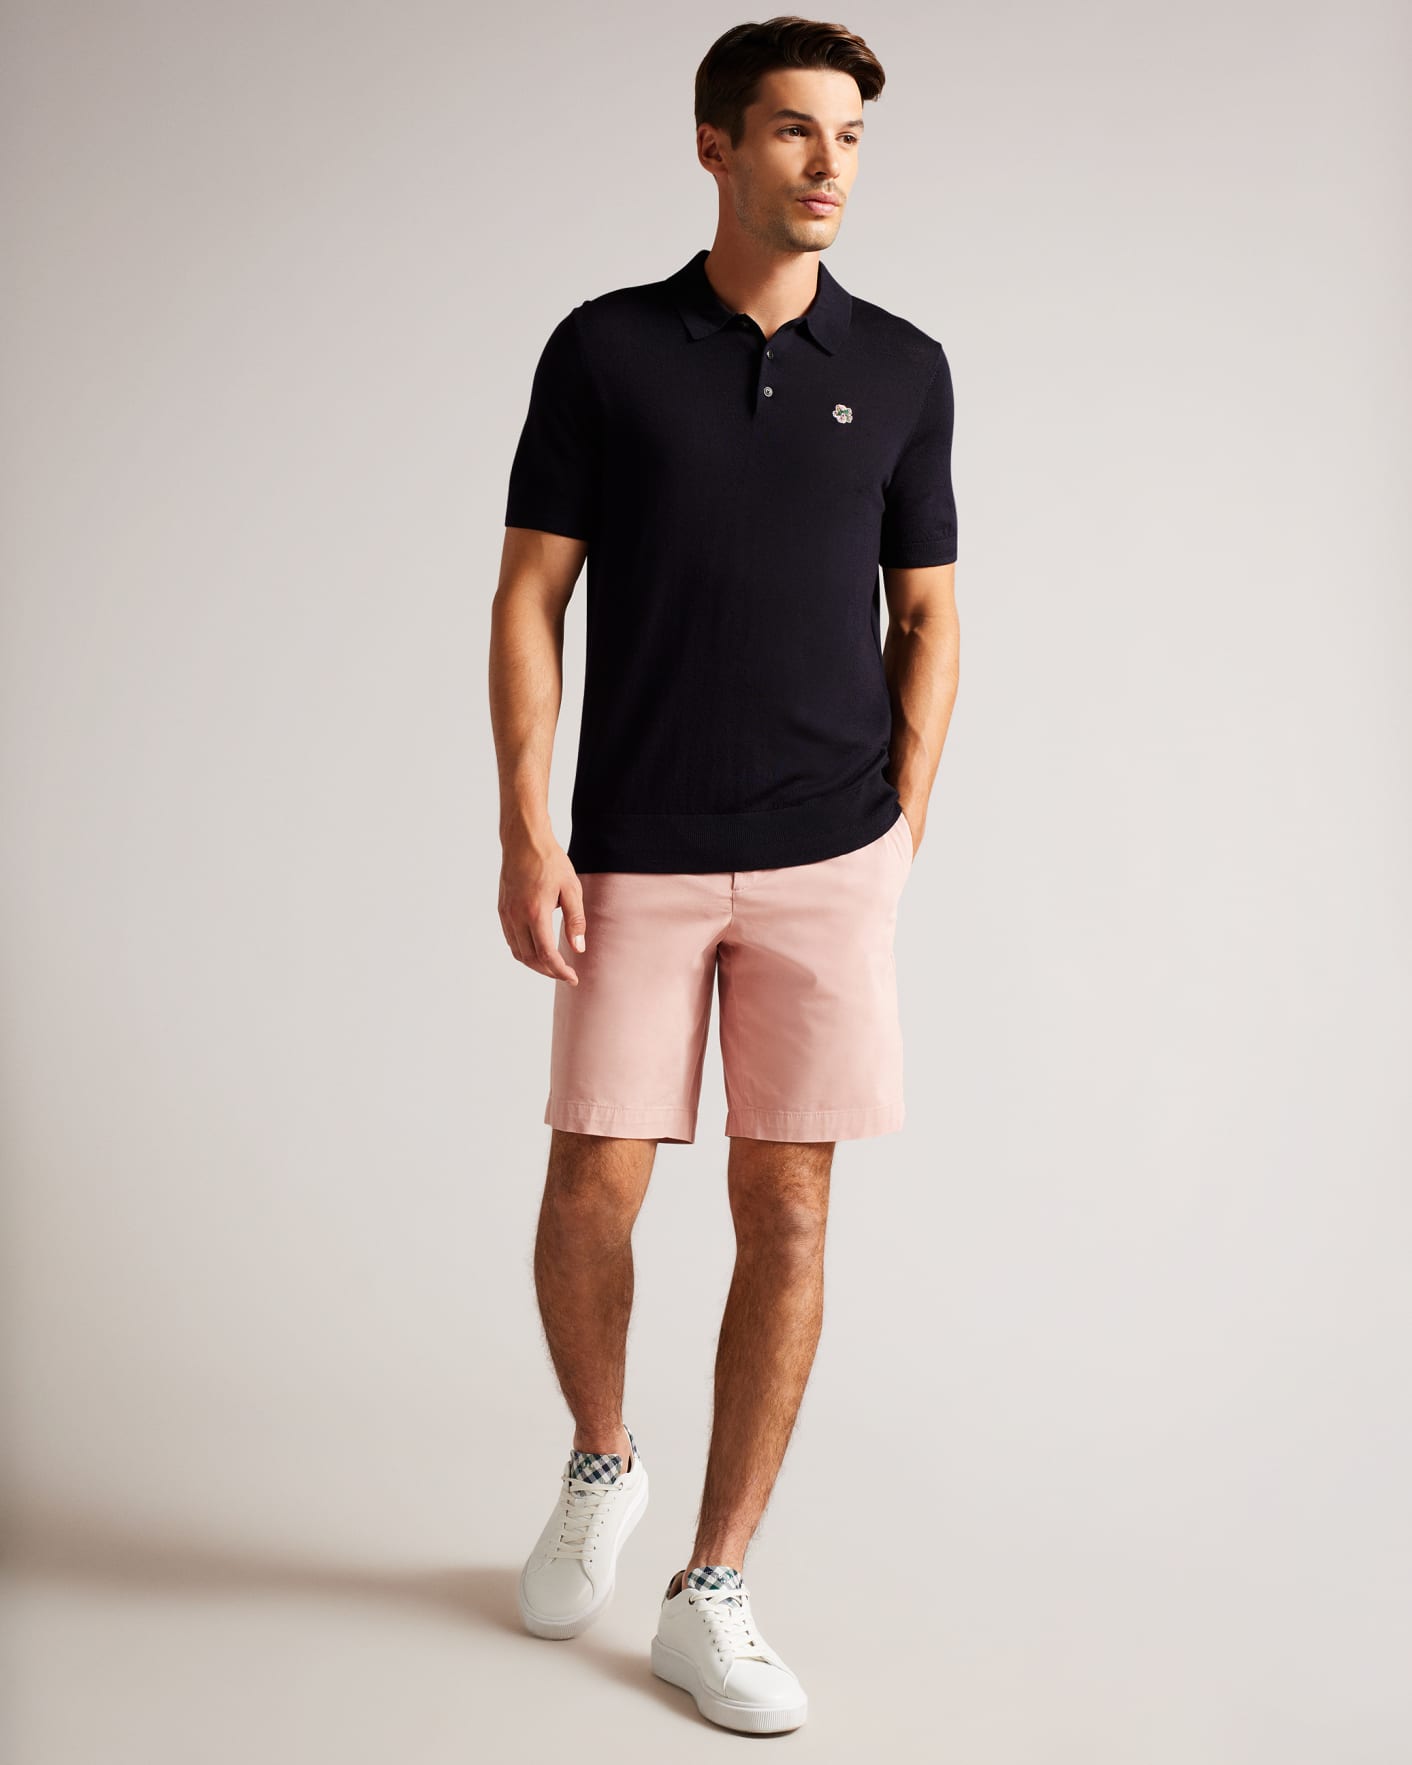 Medium Pink Chino Shorts Ted Baker